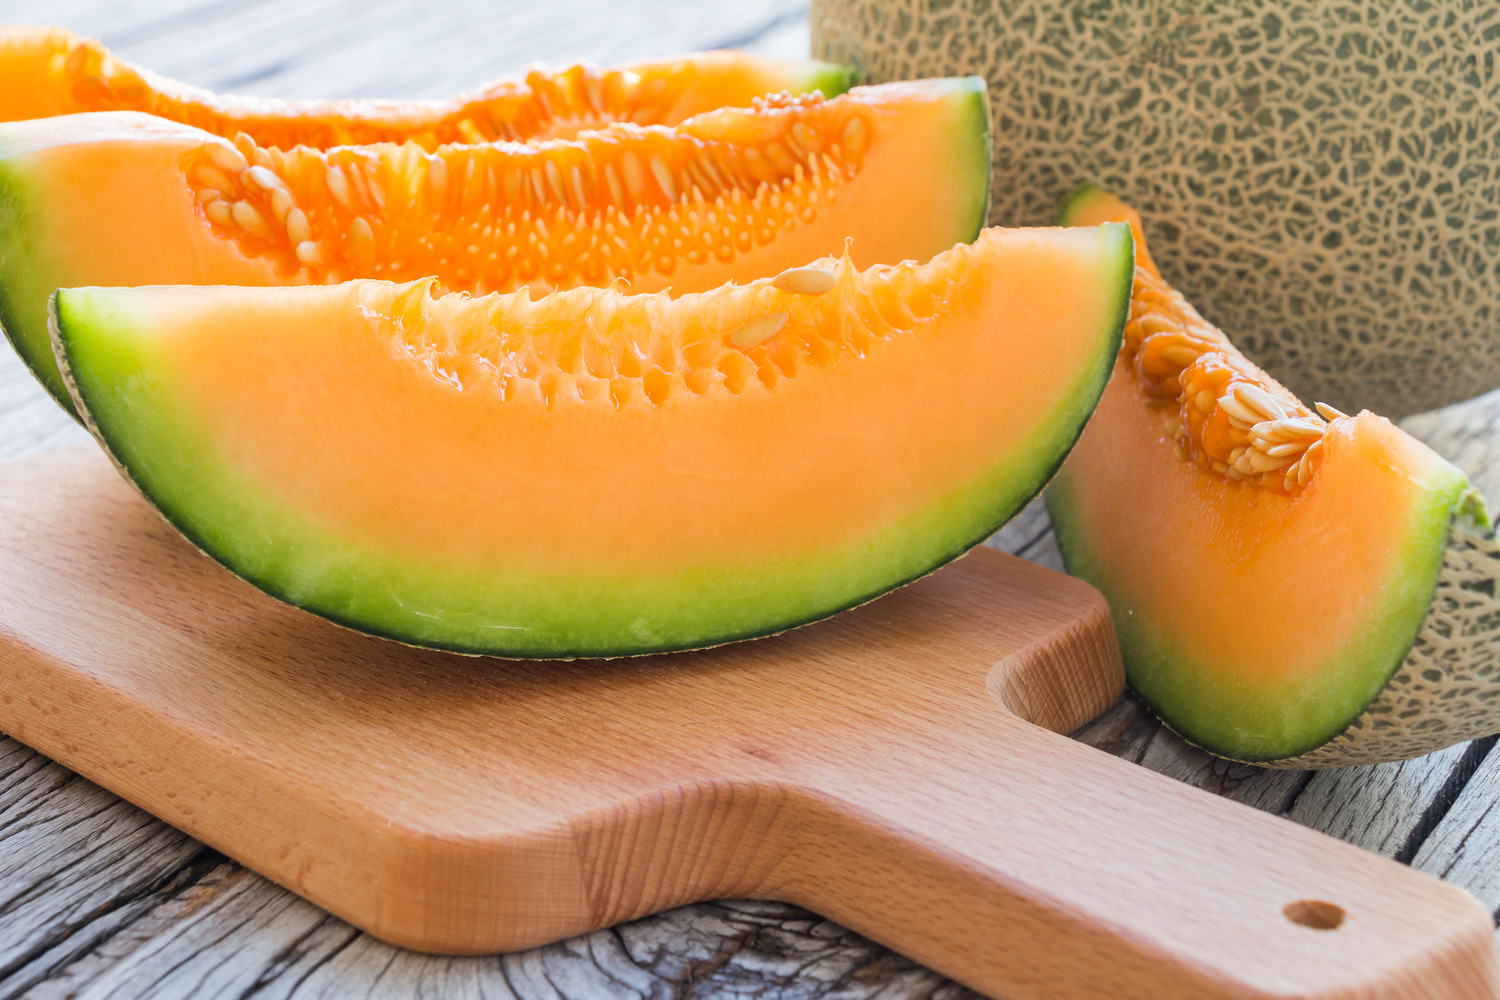 Pourquoi Un Nutritionniste Mange Toujours Son Melon en Fin de Repas